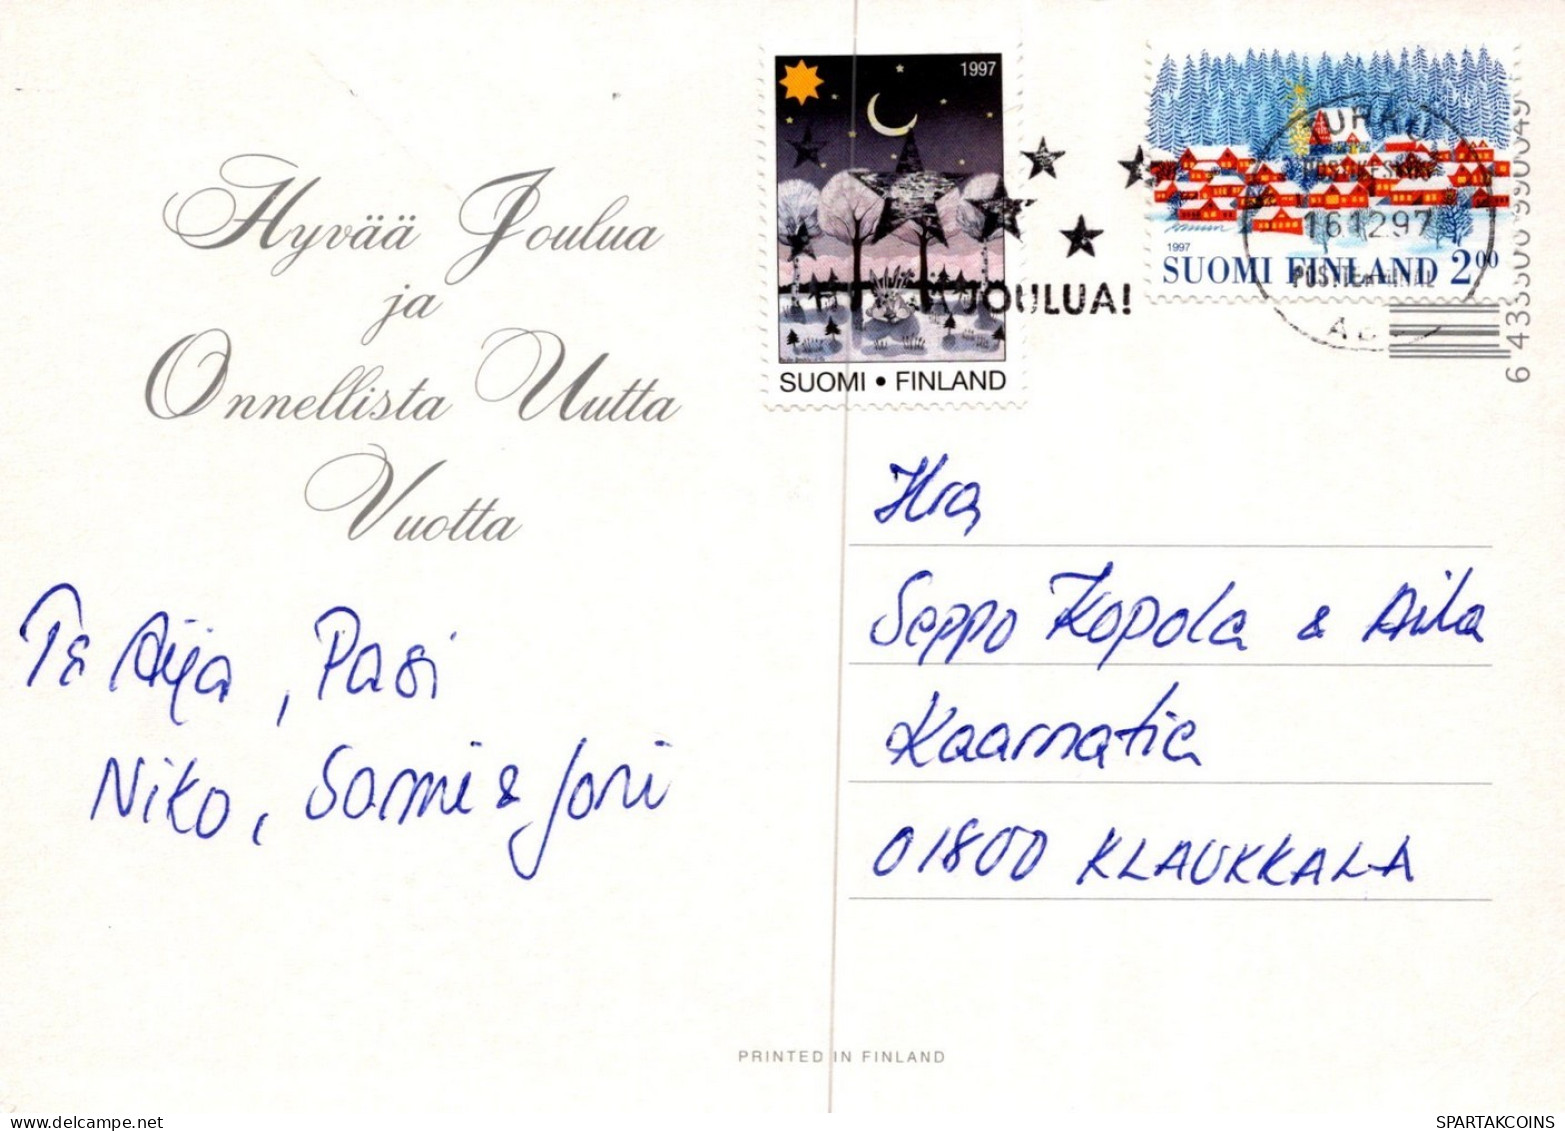 WEIHNACHTSMANN SANTA CLAUS KINDER WEIHNACHTSFERIEN Vintage Postkarte CPSM #PAK348.DE - Santa Claus